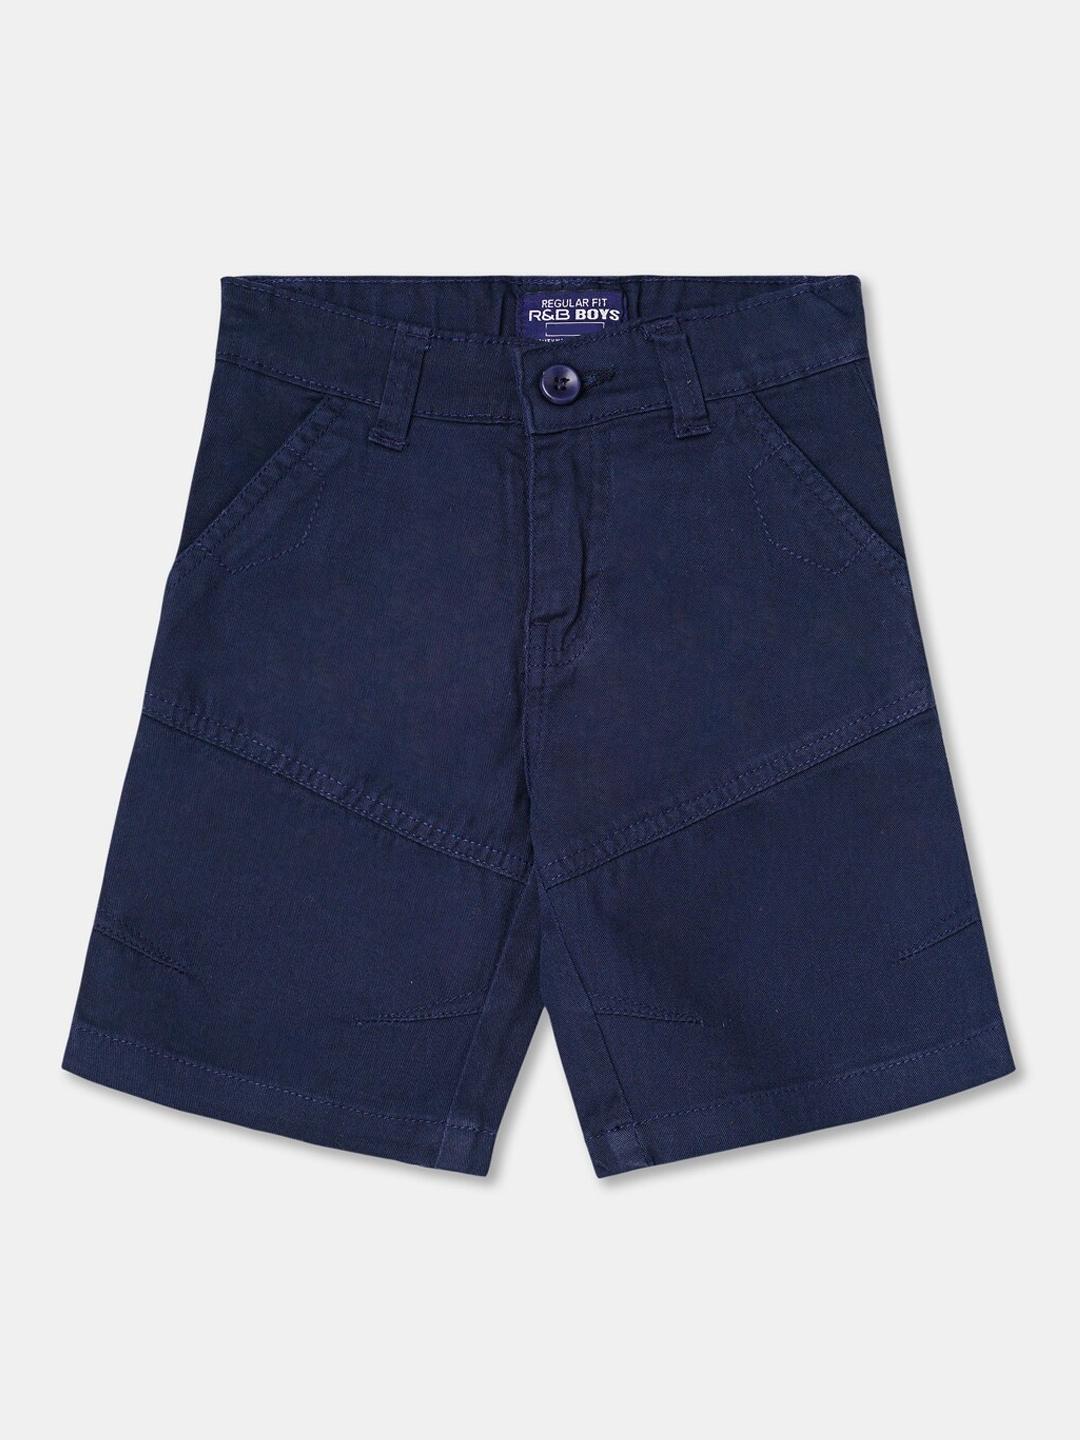 r&b-boys-blue-shorts